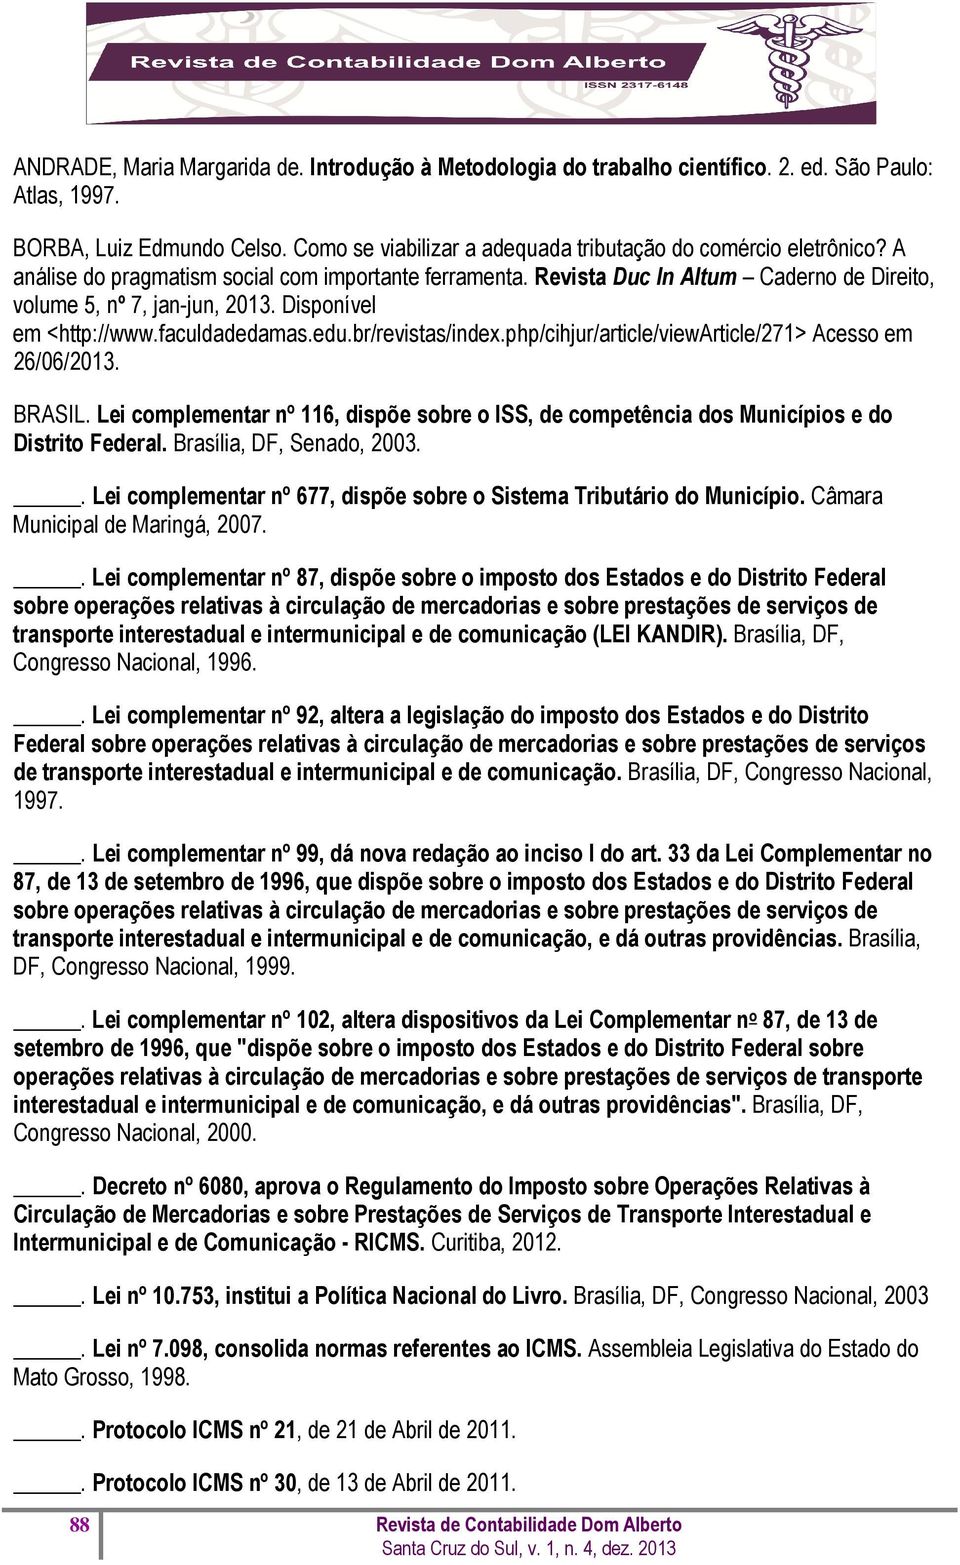 php/cihjur/article/viewarticle/271> Acesso em 26/06/2013. BRASIL. Lei complementar nº 116, dispõe sobre o ISS, de competência dos Municípios e do Distrito Federal. Brasília, DF, Senado, 2003.